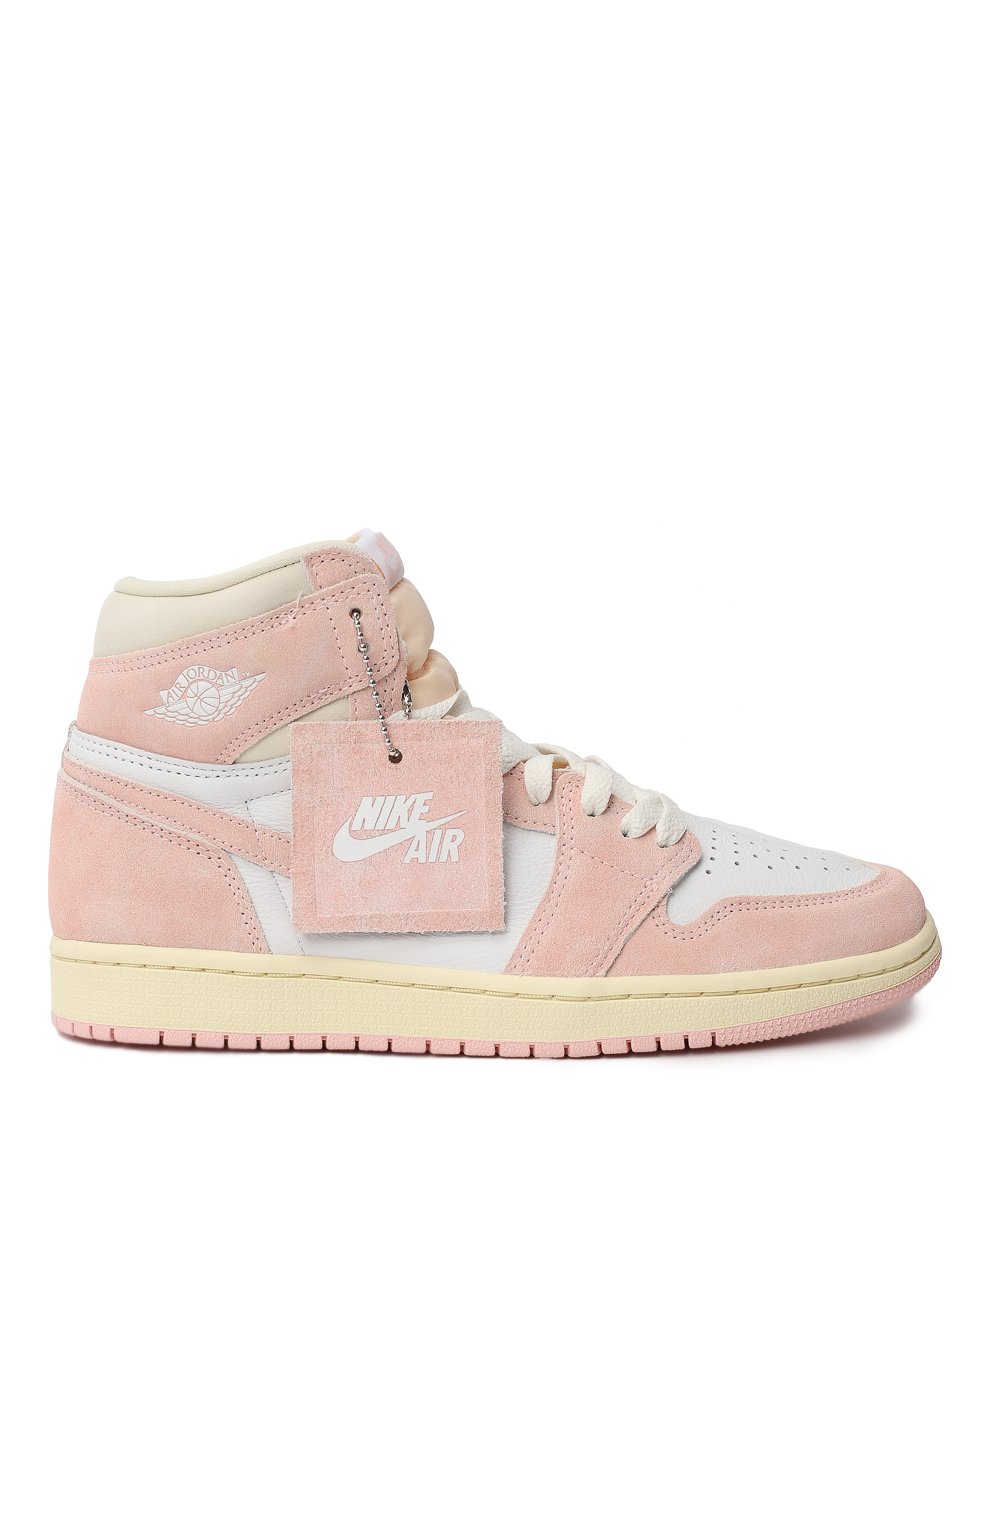 Кеды Air Jordan 1 Retro High OG "Washed Pink" | Nike | Розовый - 5